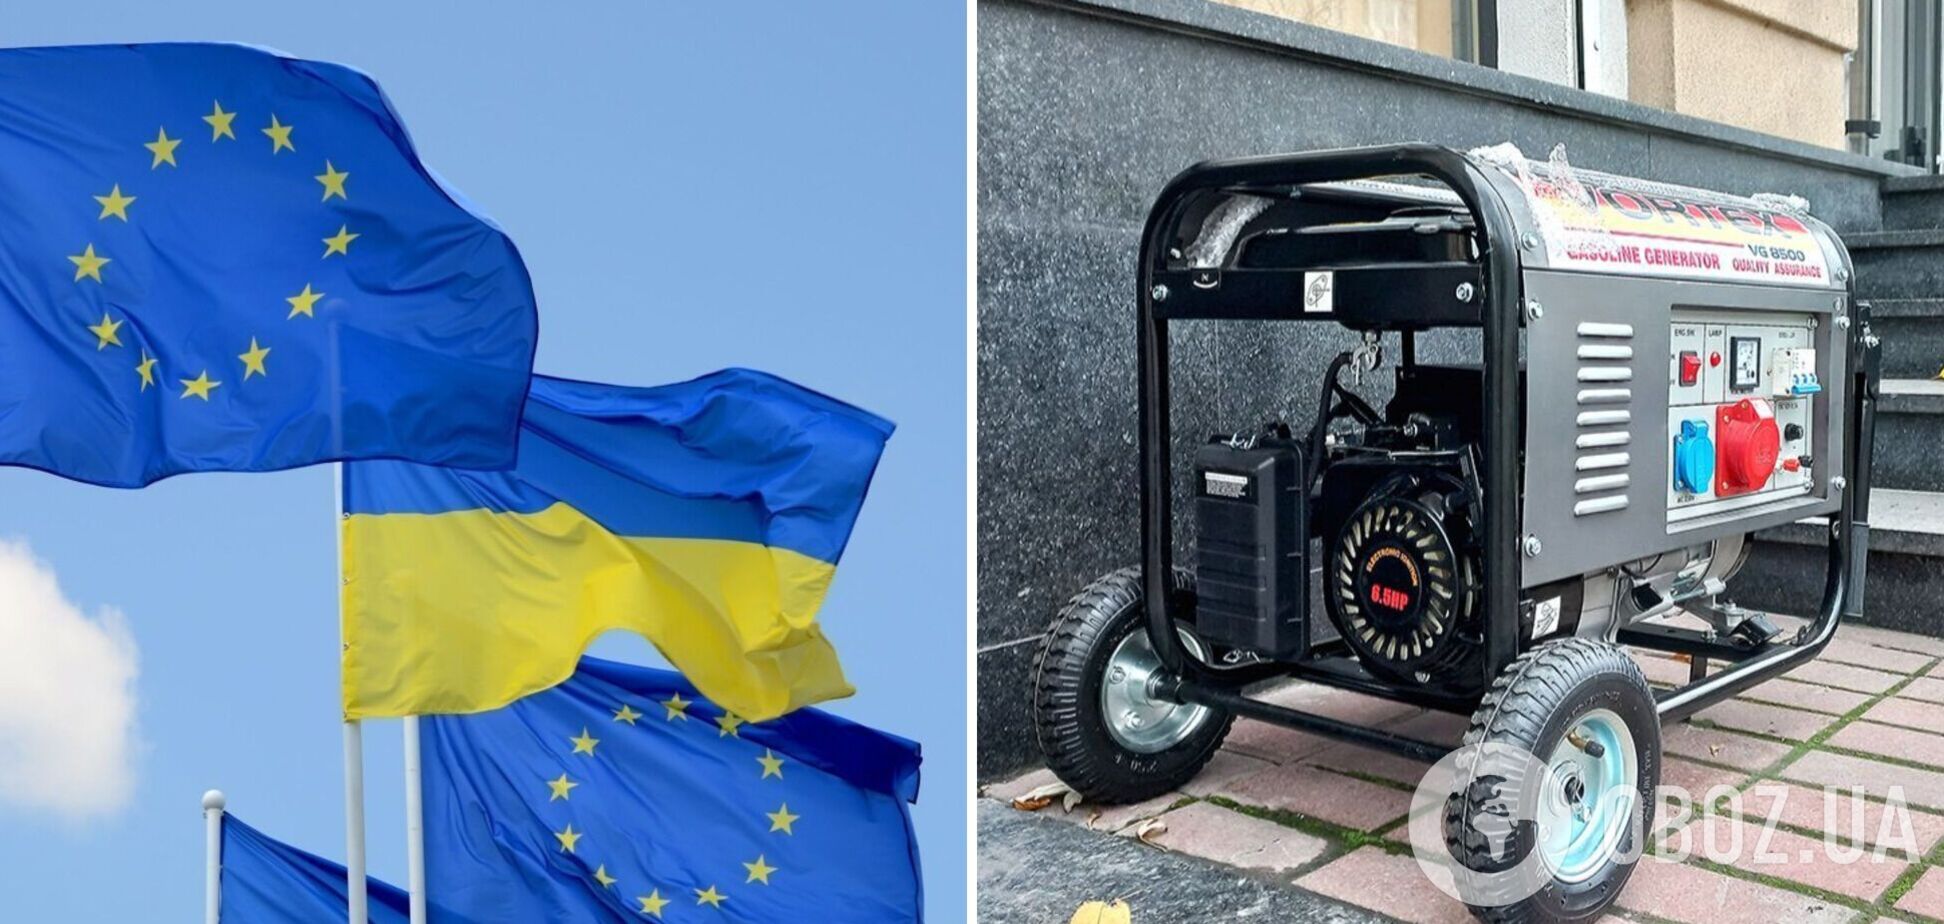 Євросоюз передасть Україні 200 трансформаторів і 40 великих генераторів, – фон дер Ляєн